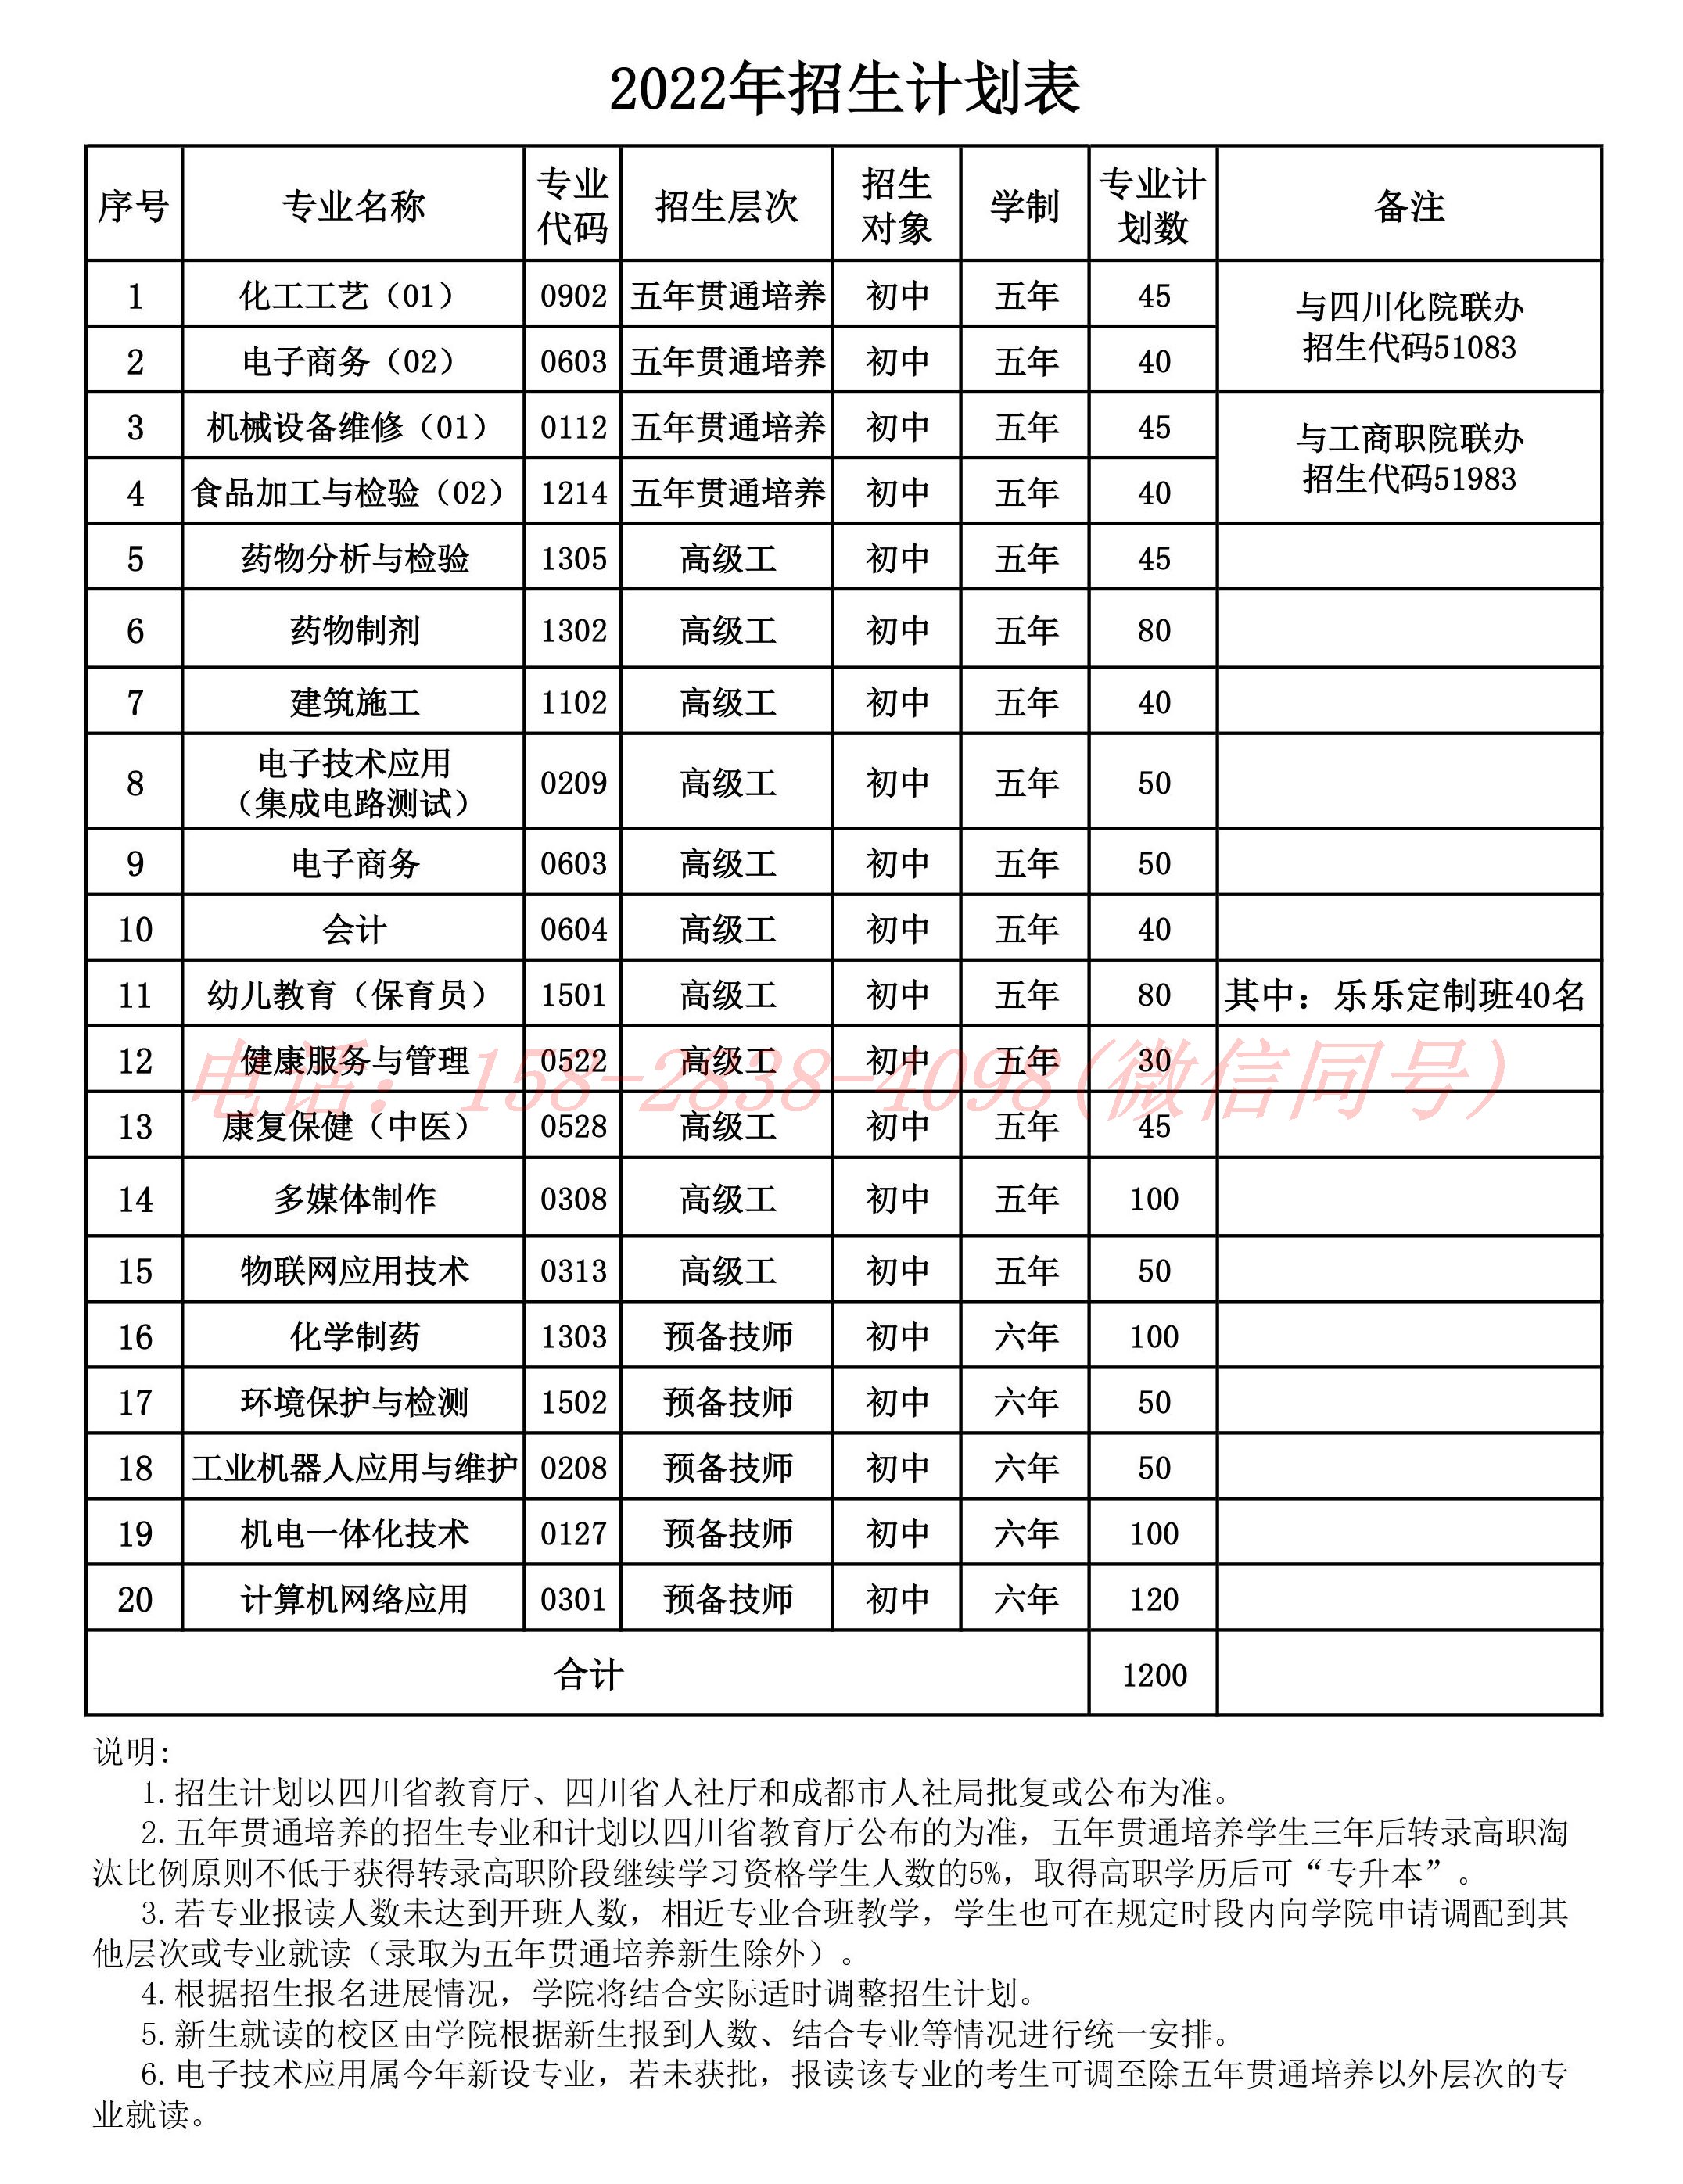 四川理工技师学院2022年招生计划表